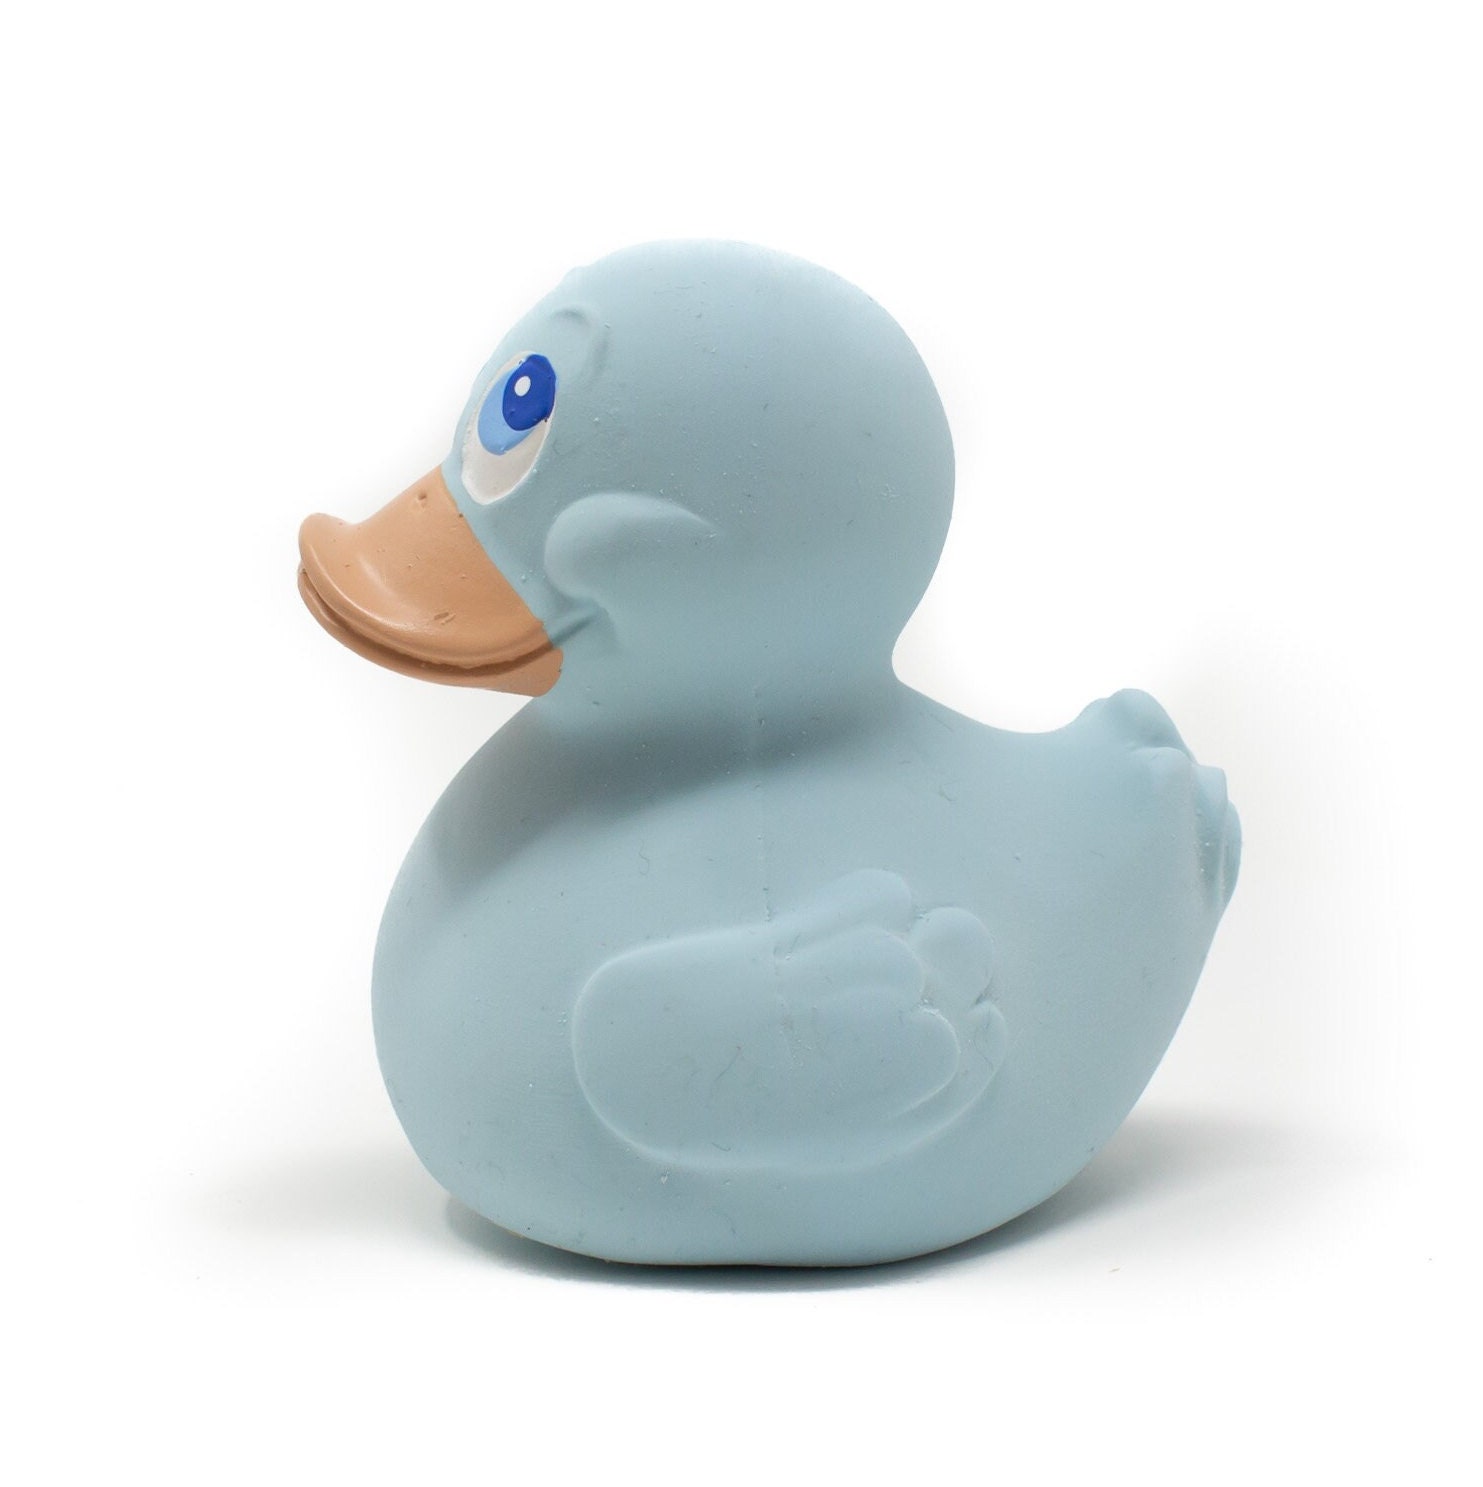 Rubber duck toy - .de